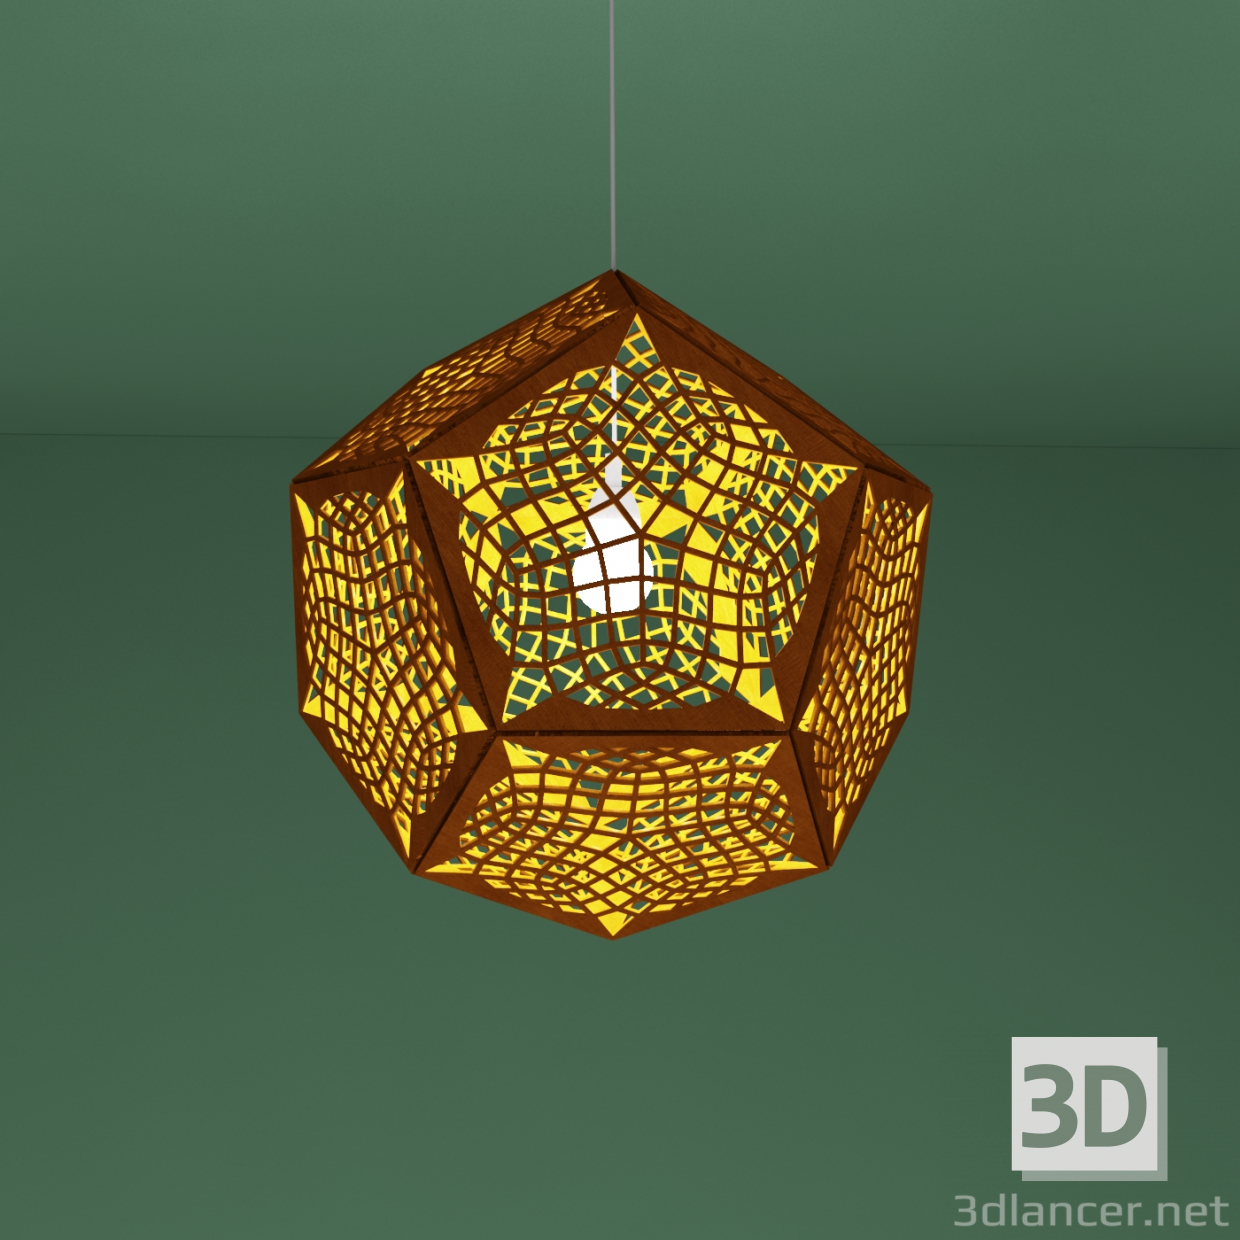 Sperrholzlampe 3D-Modell kaufen - Rendern